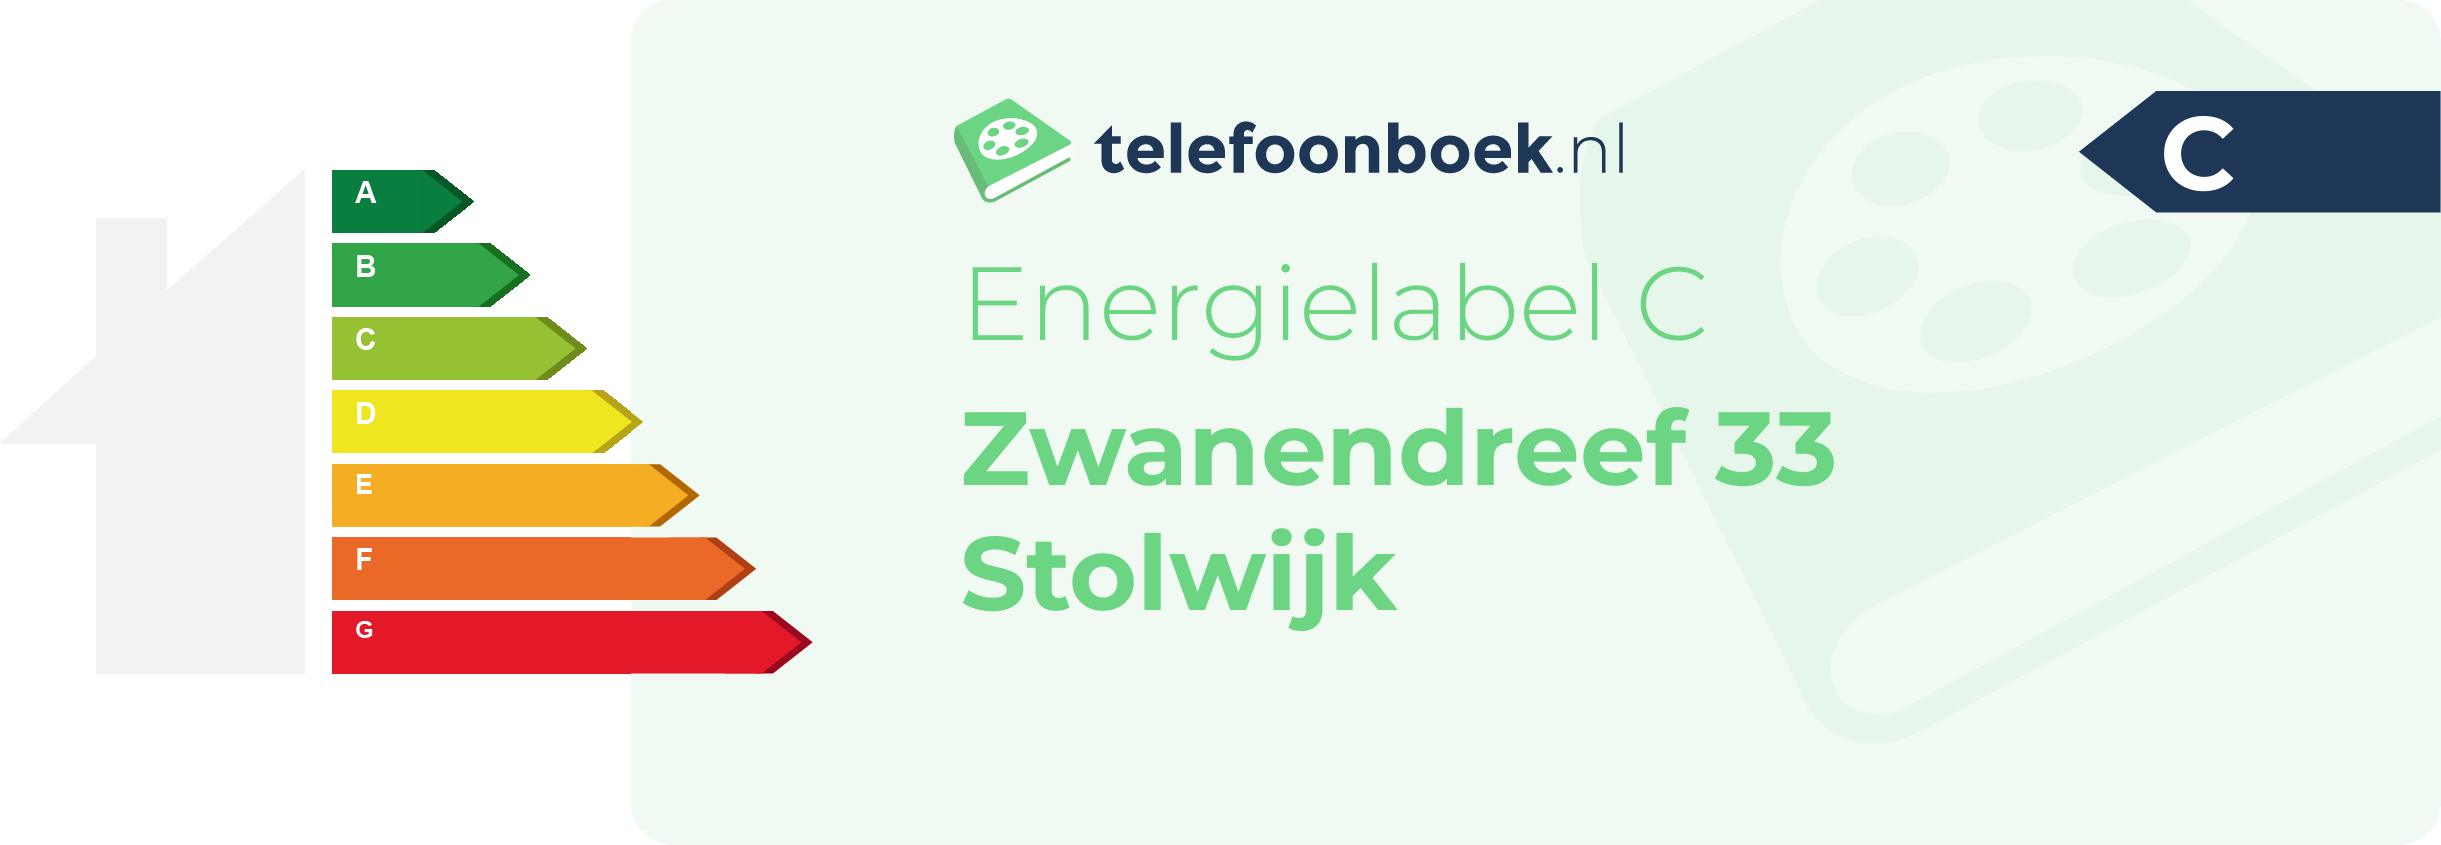 Energielabel Zwanendreef 33 Stolwijk